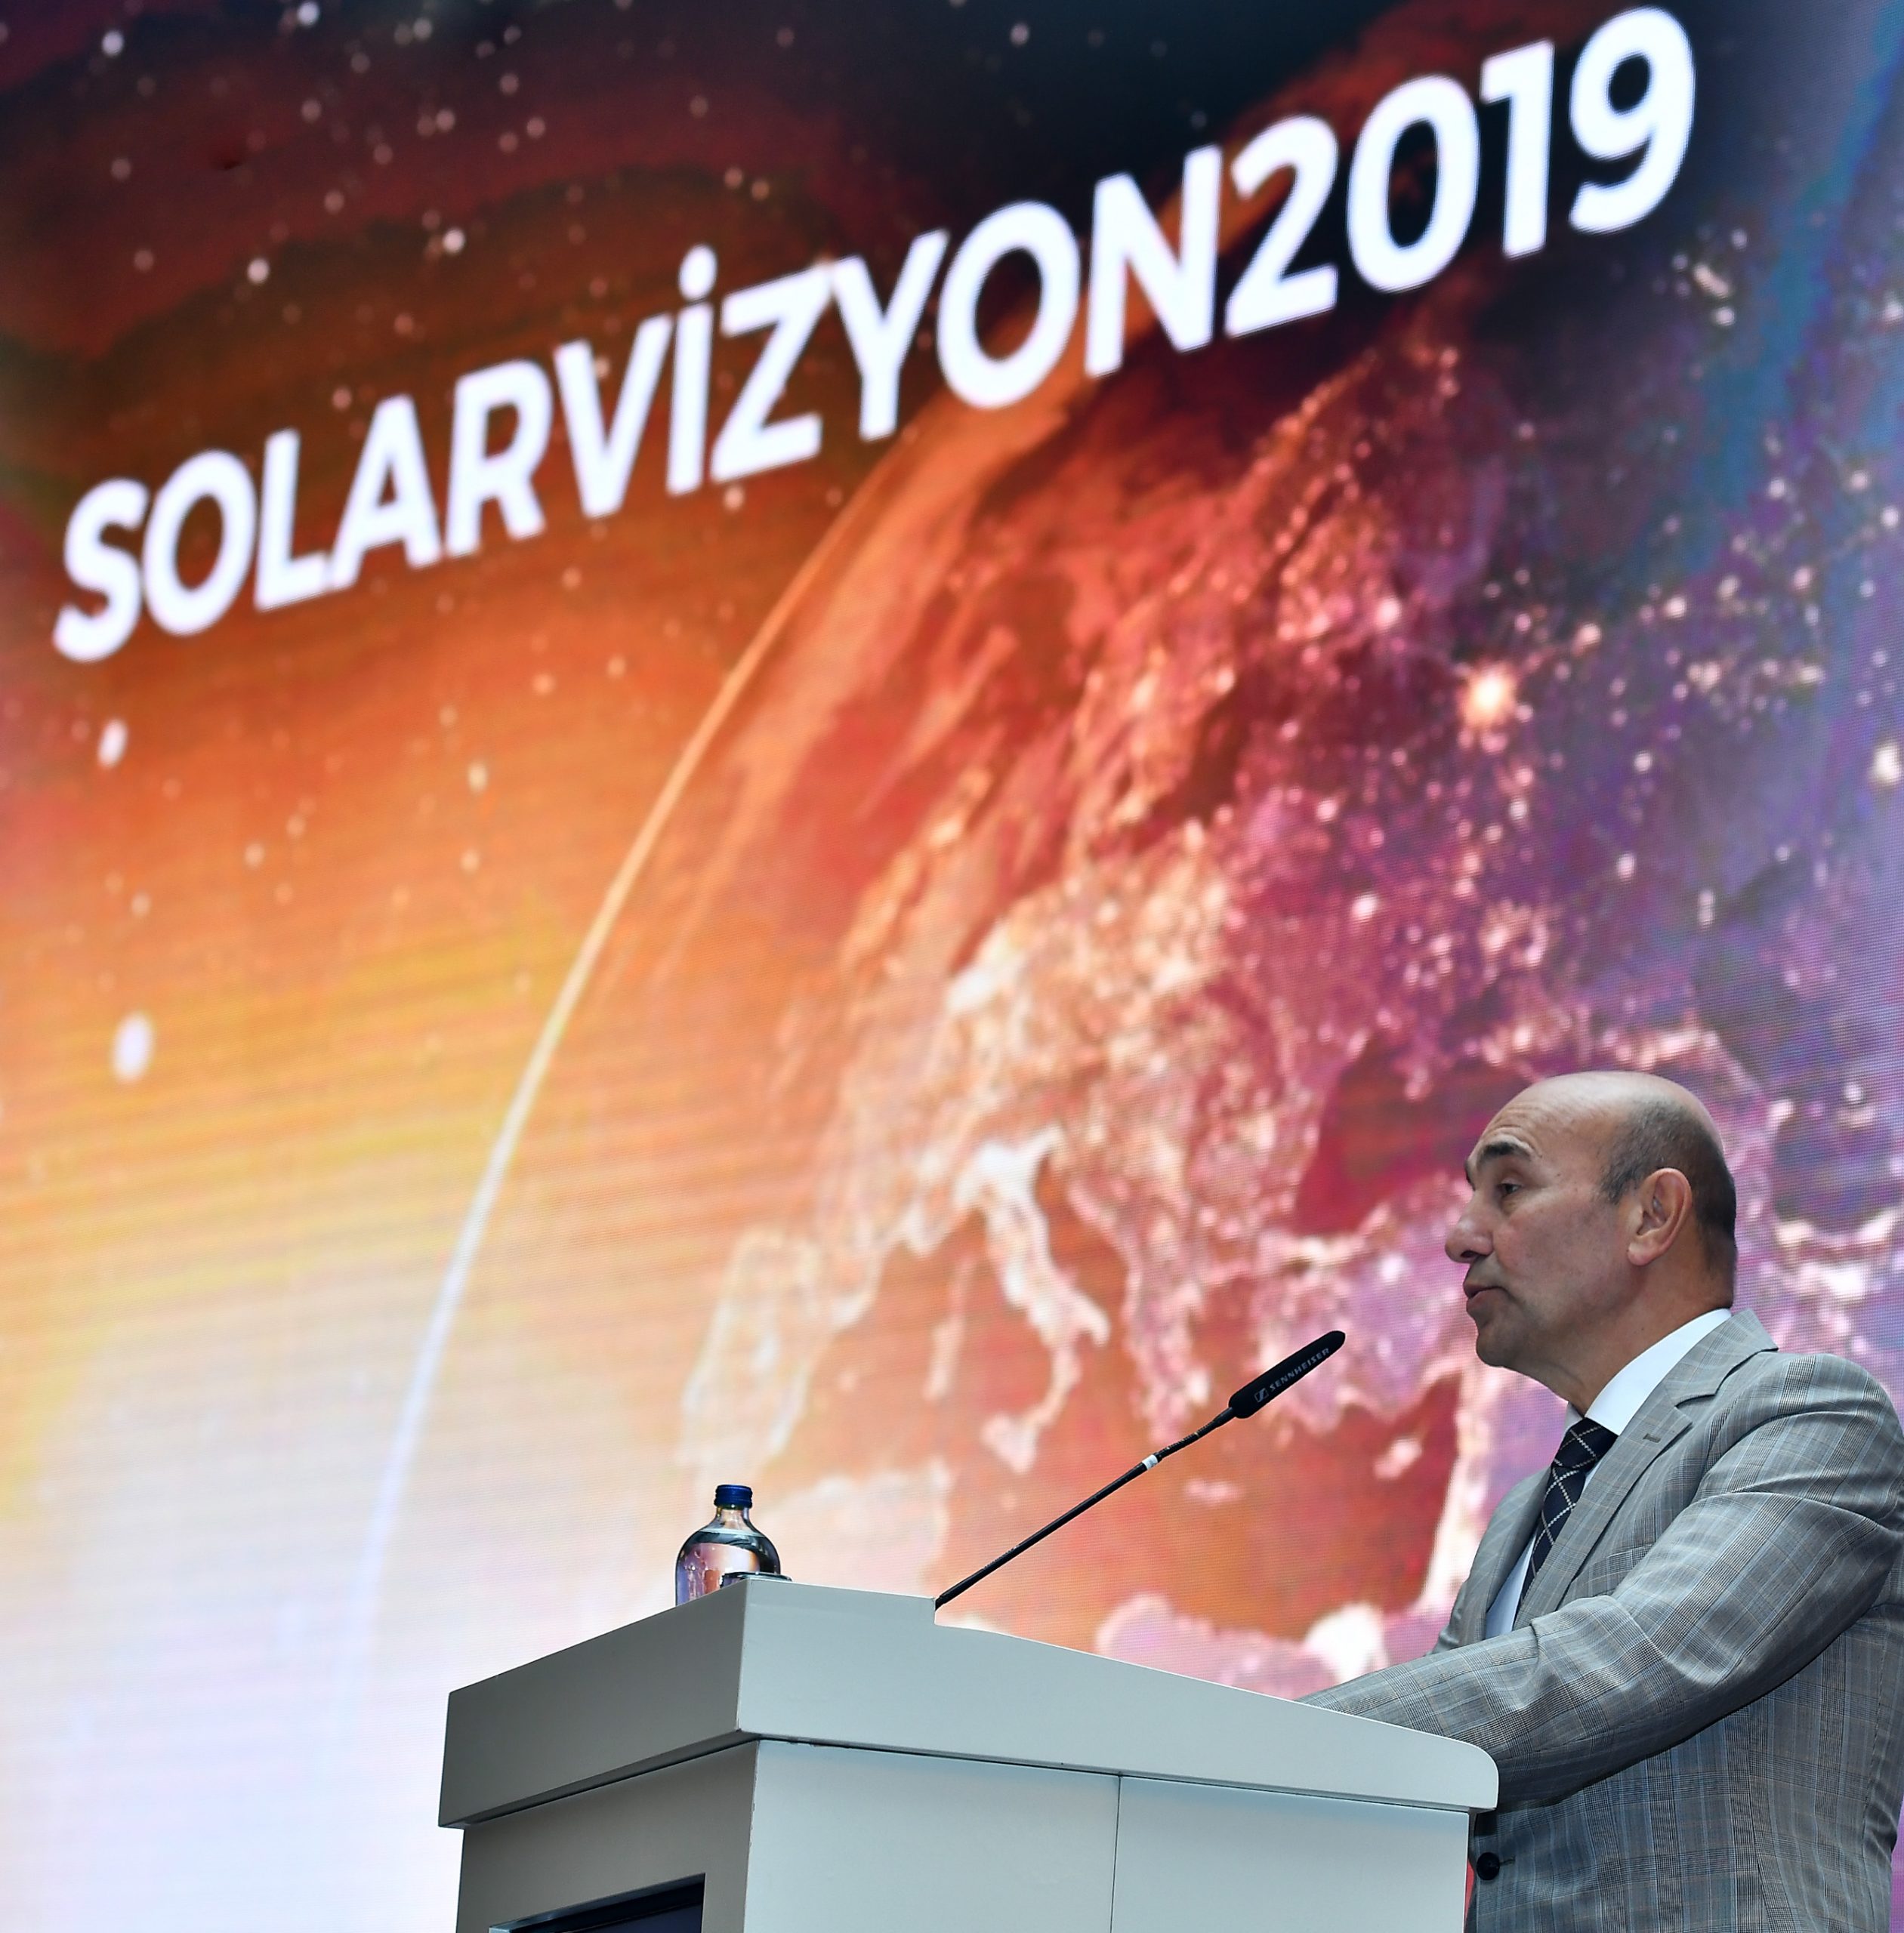 Başkan Tunç Soyer güneş enerjisinin ekonomi için önemine vurgu yaptı